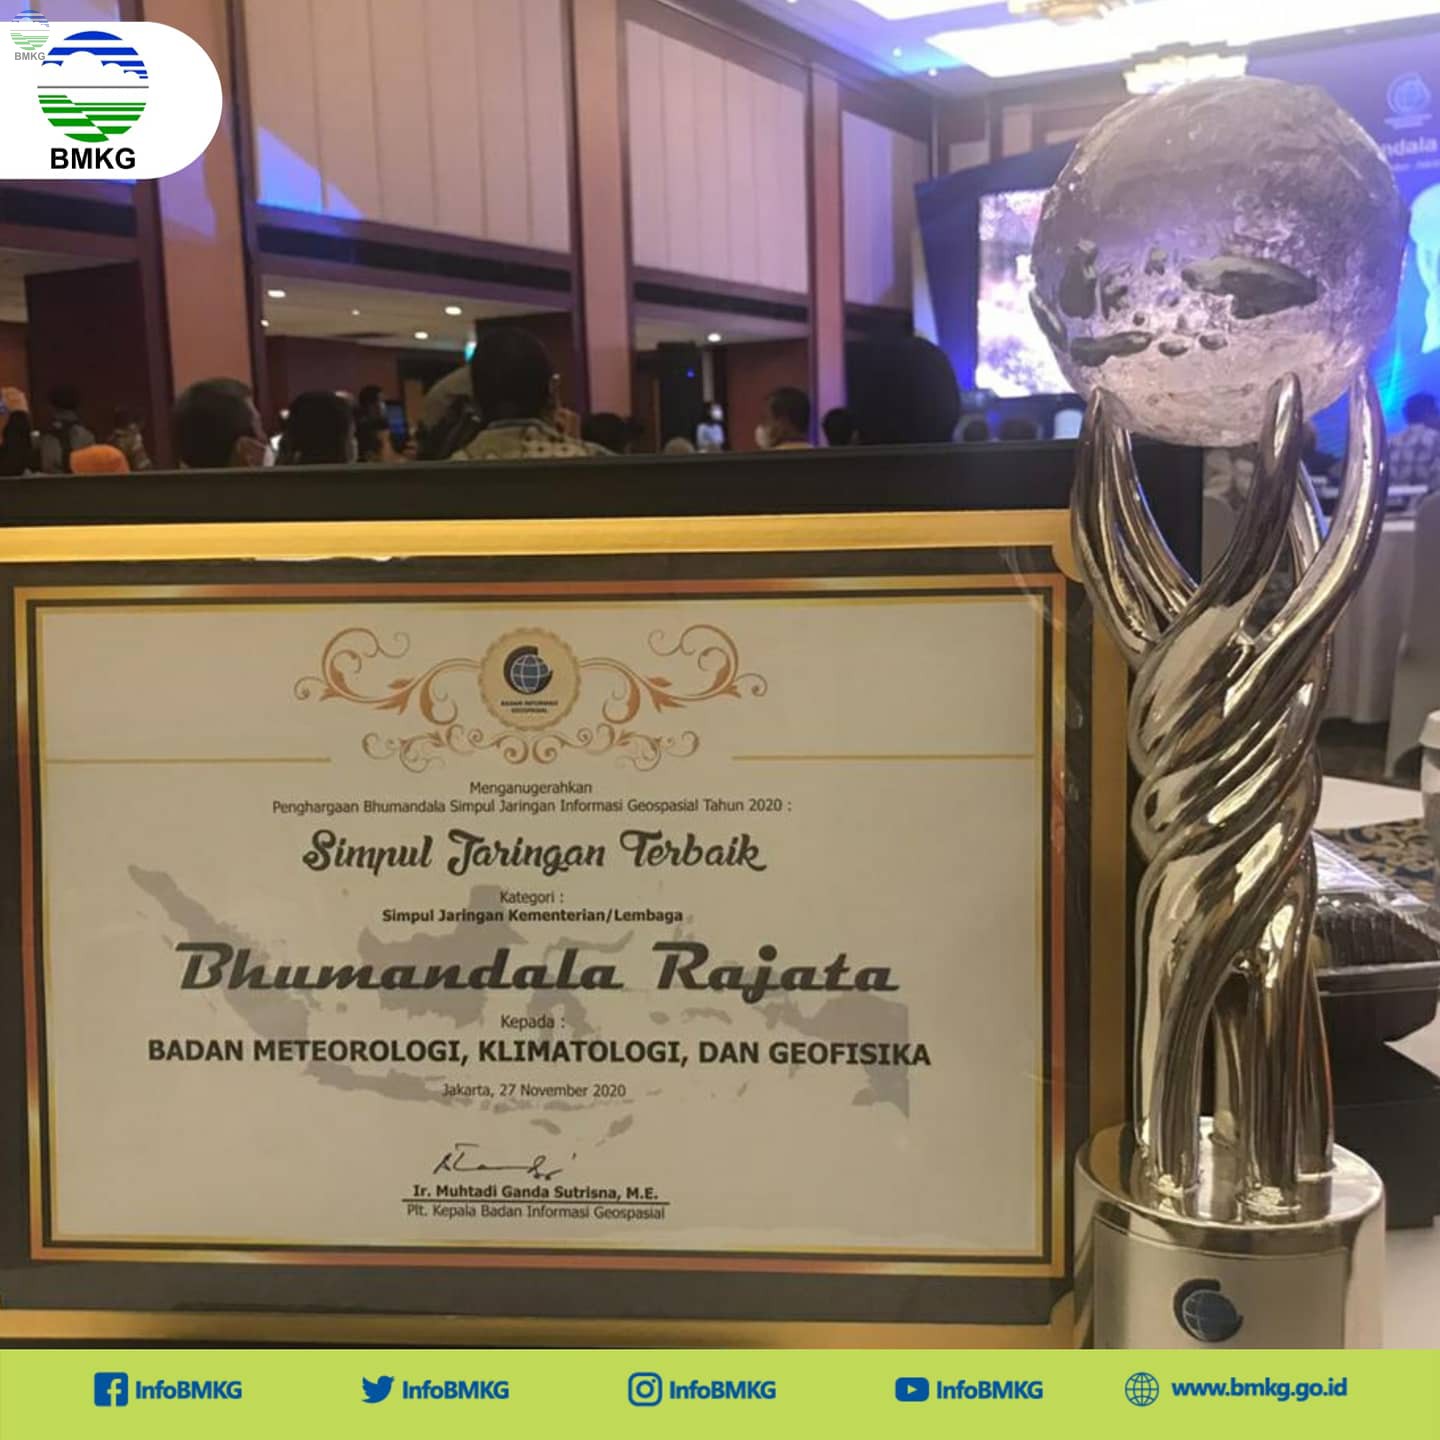 Rutin Hasilkan Data Real Time, BMKG Raih Penghargaan Bhumandala Rajata dari BIG